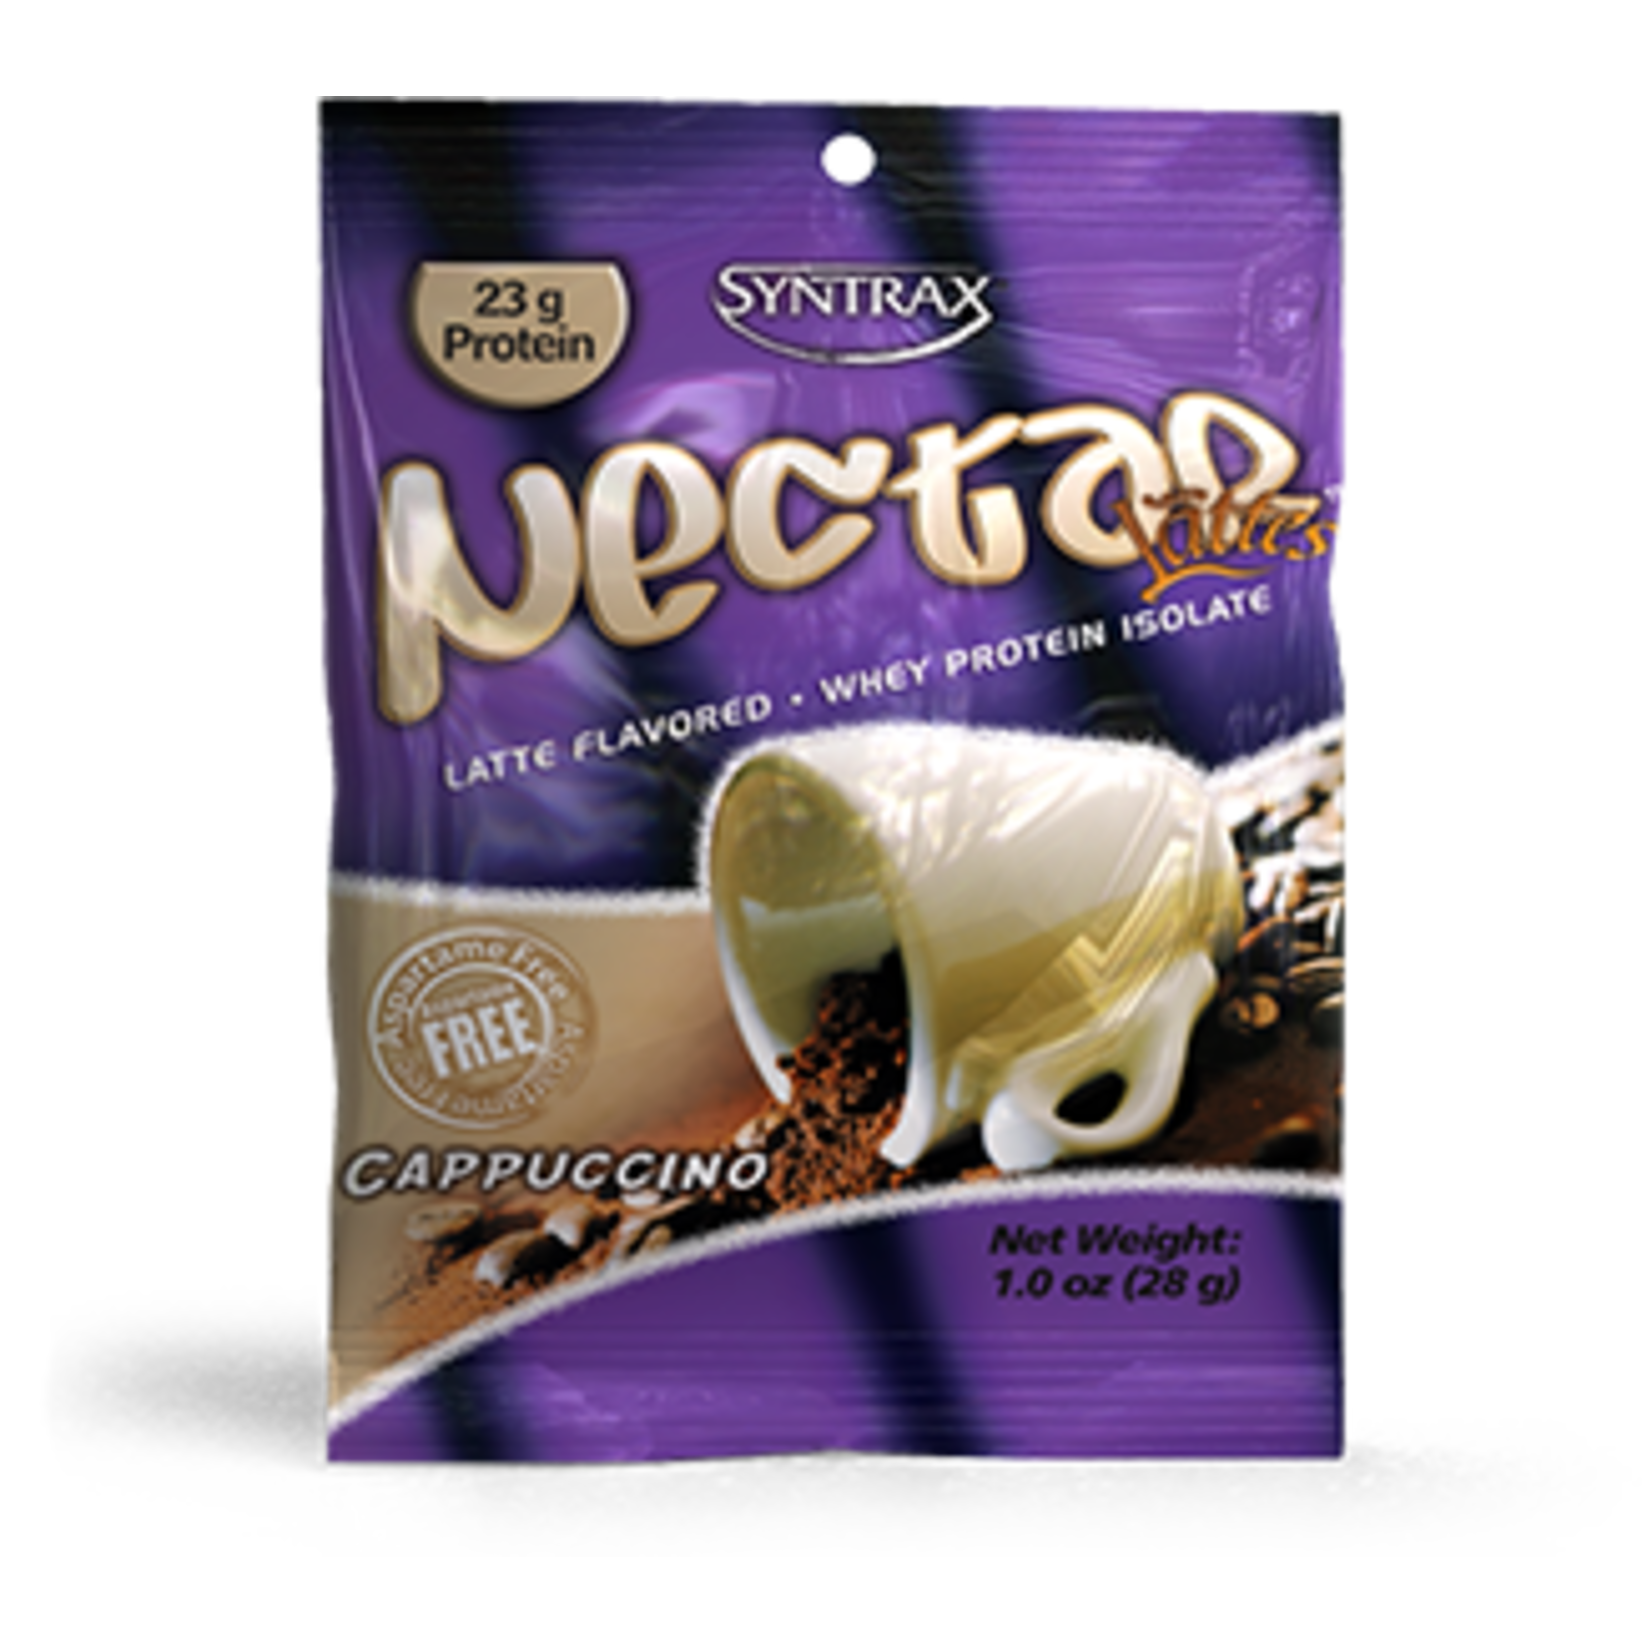 Nectar Cappuccino G&G